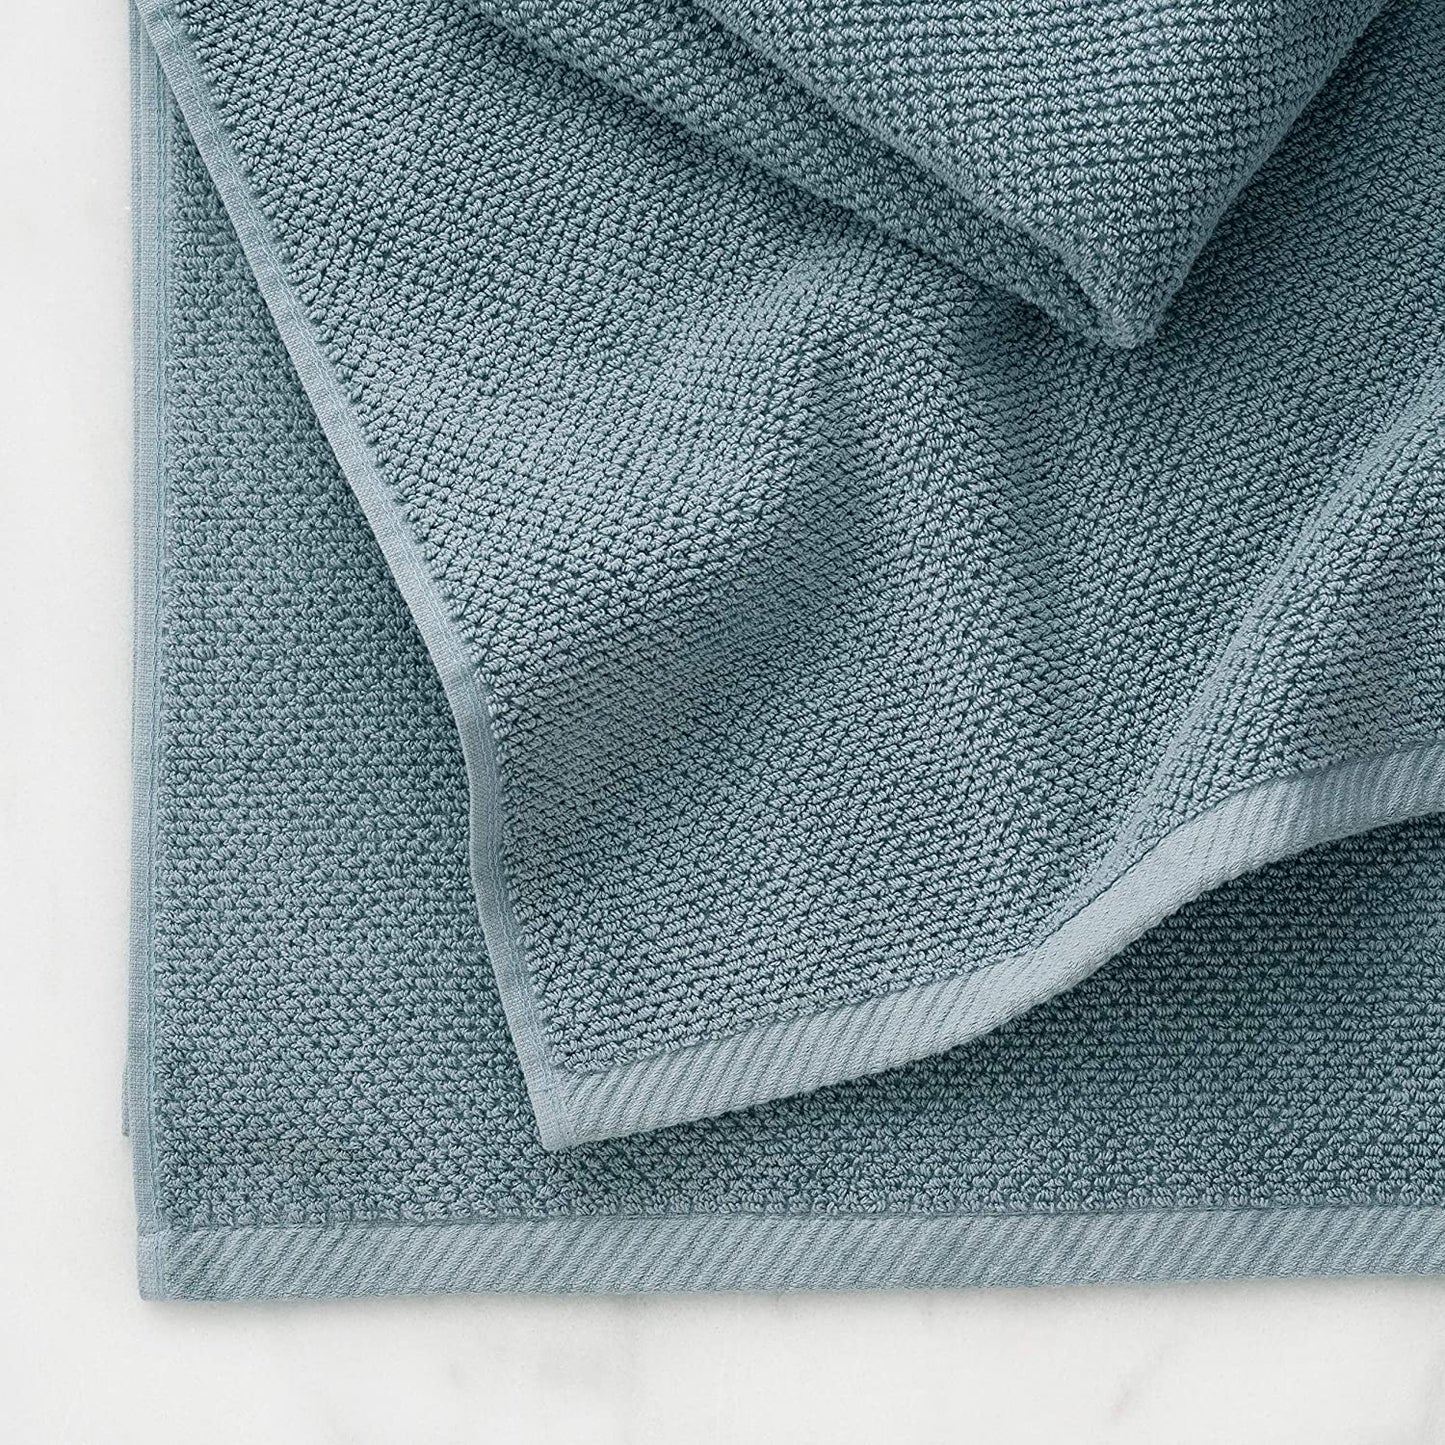 100% Cotton BLUE POPCORN BATH TOWELS - (4 Pack)